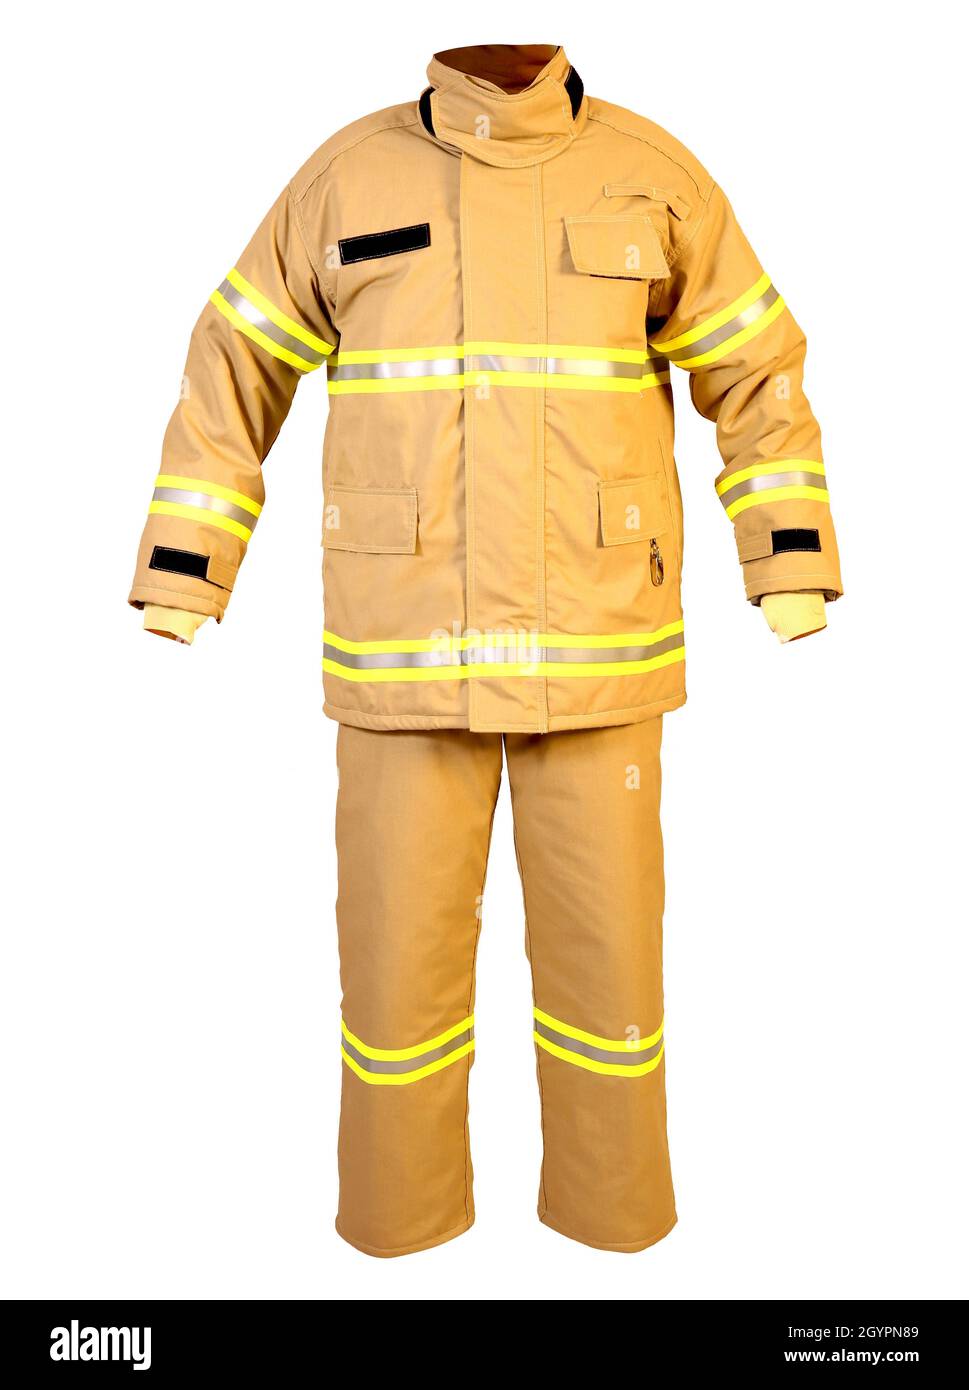 El Bombero Con El Fuego Y El Traje Para Protegen El Fuego Imagen de archivo  - Imagen de persona, hombre: 152792241